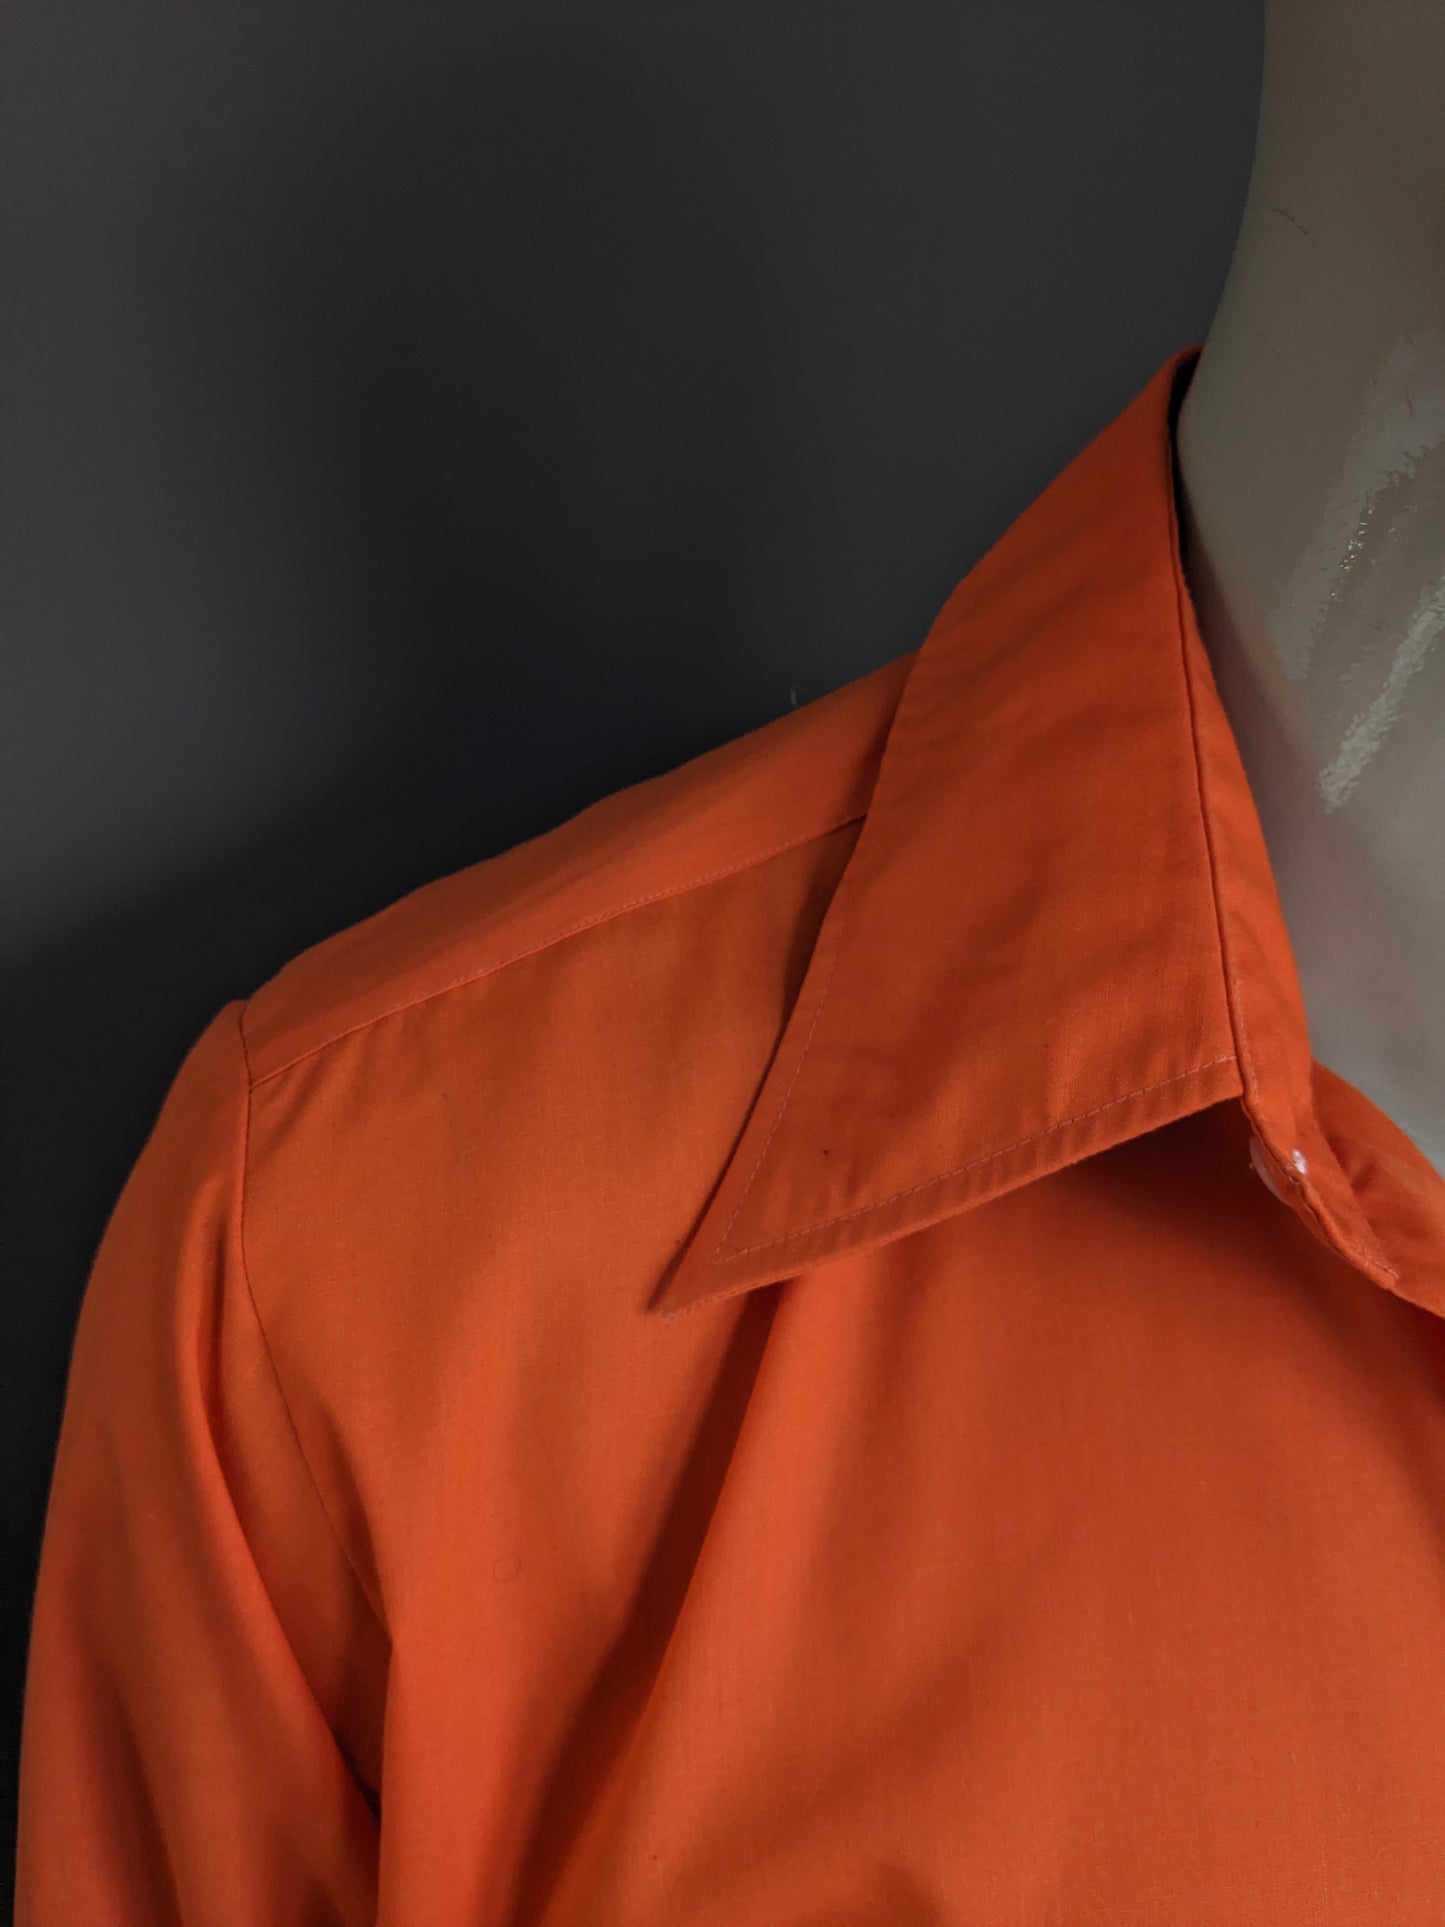 Vintage 70er Curo -Shirt mit Punktkragen. Orangefarben. Größe xl.